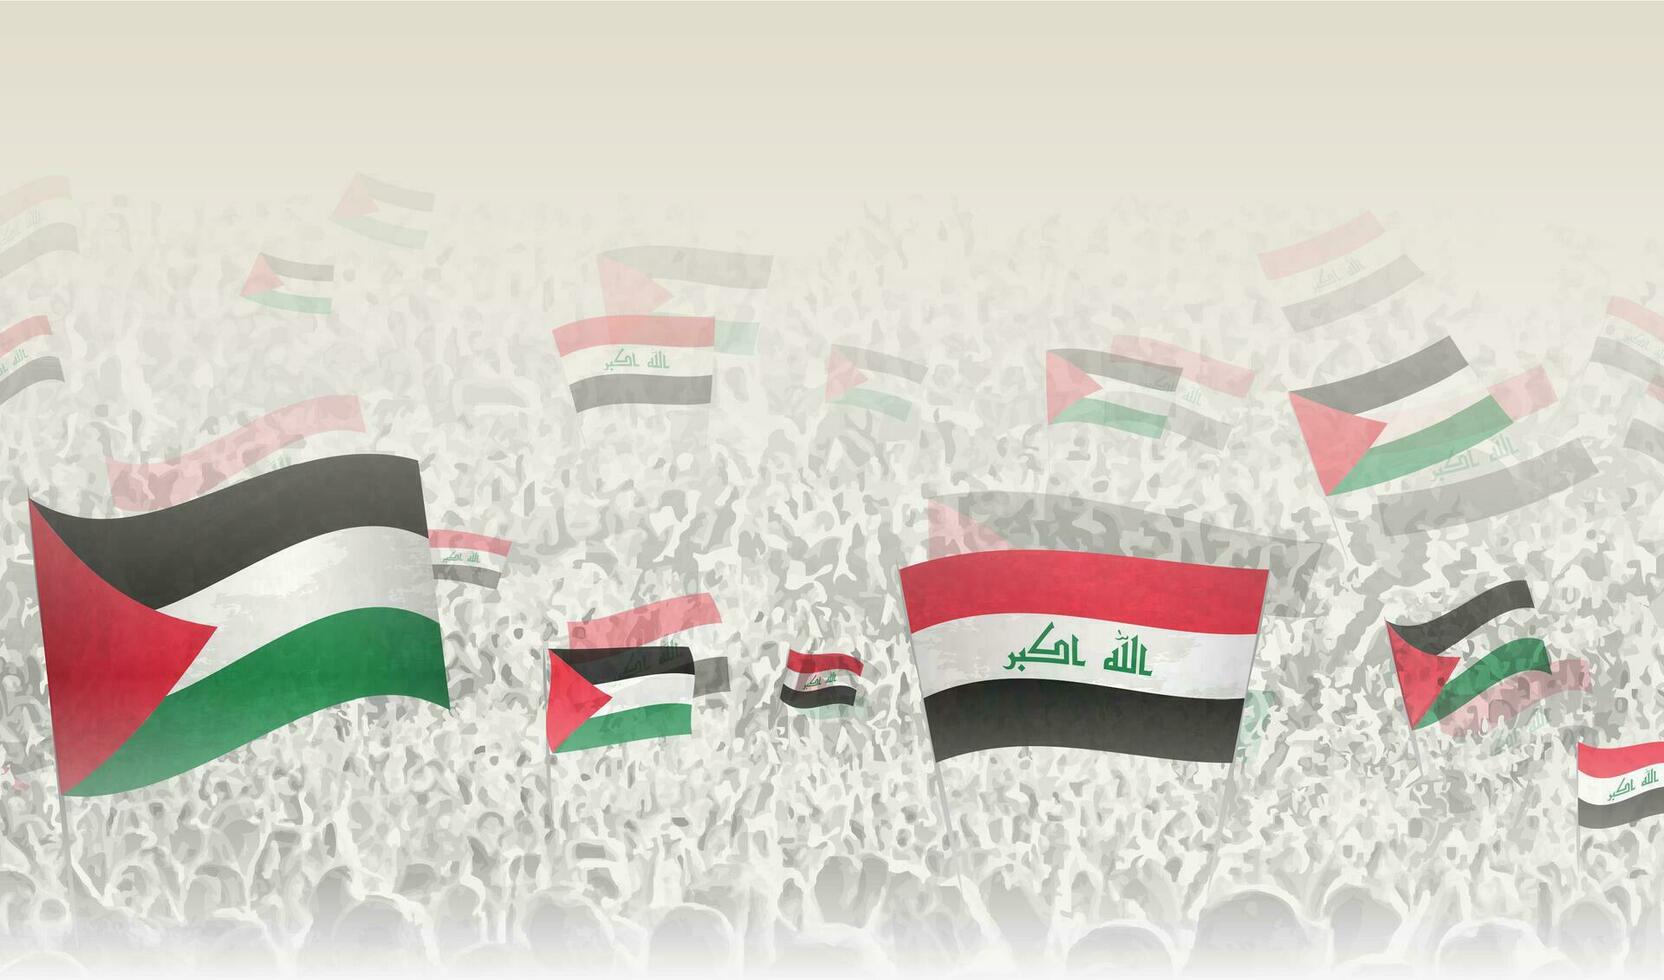 Palestina y Irak banderas en un multitud de aplausos gente. vector